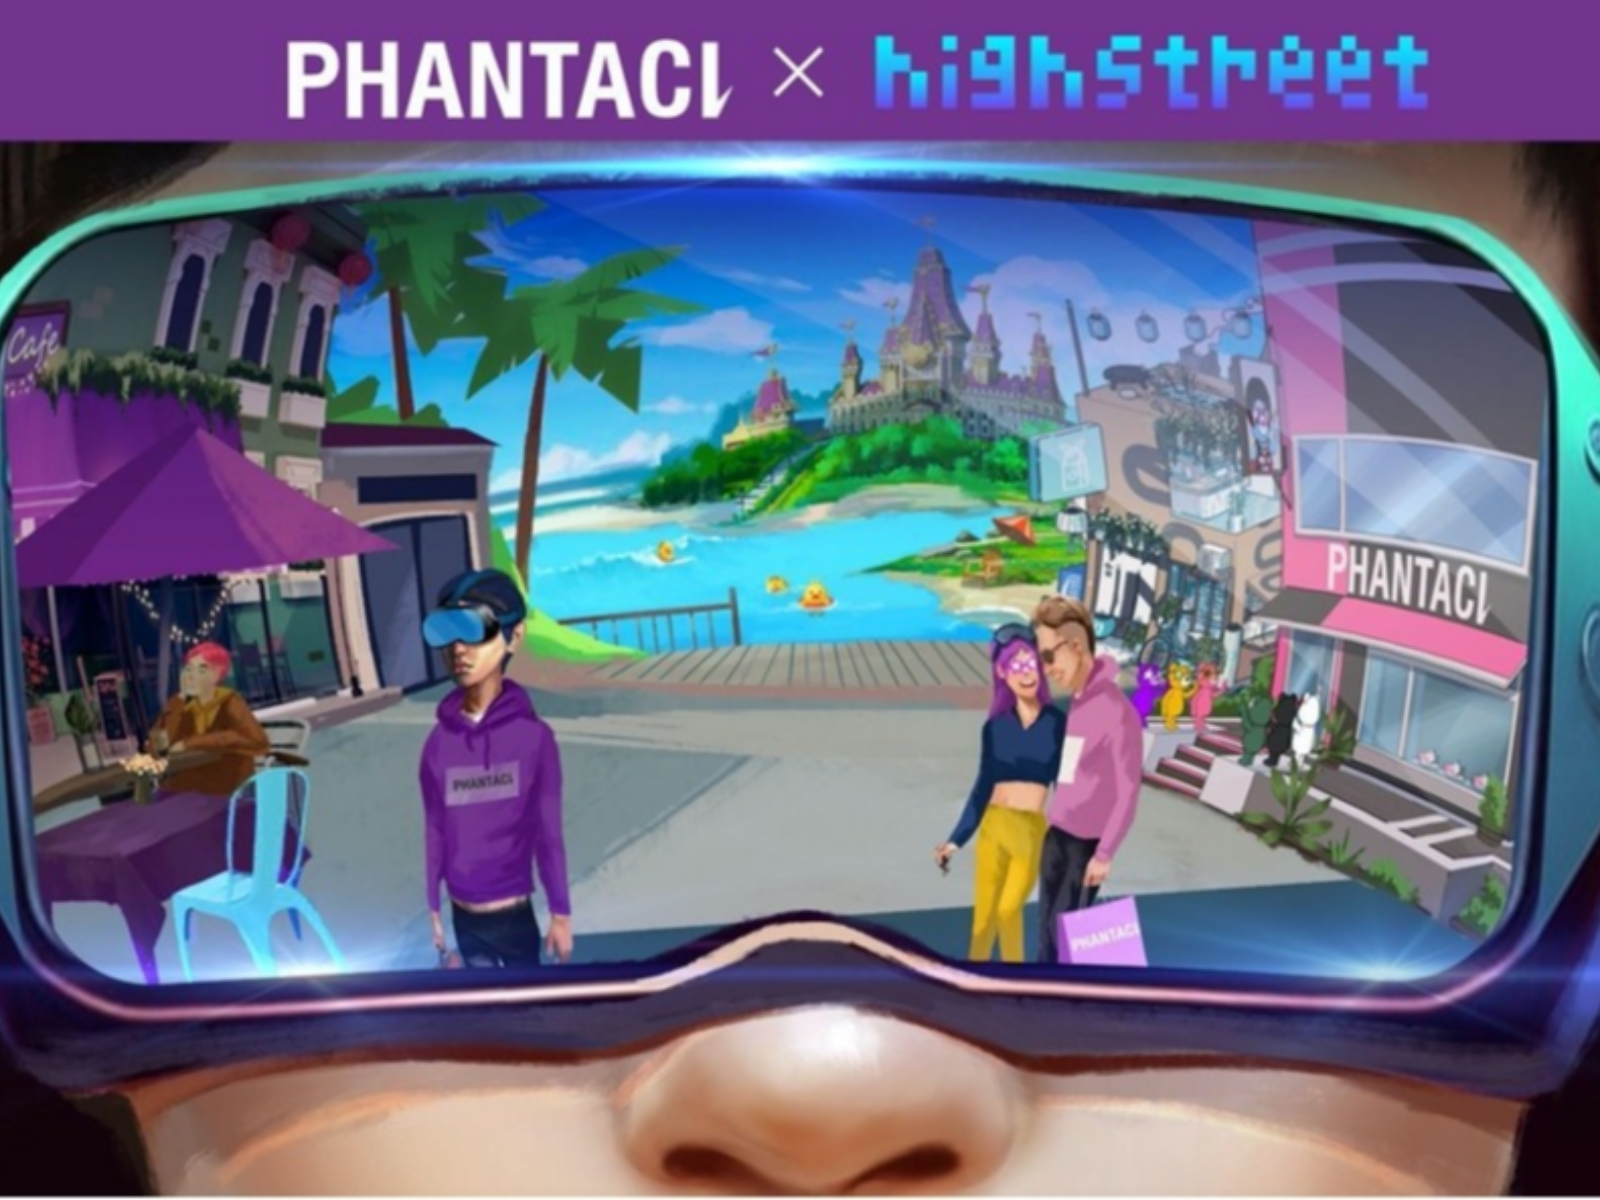 潮流服飾品牌 PHANTACi 攜手Highstreet打造全新元宇宙探索體驗